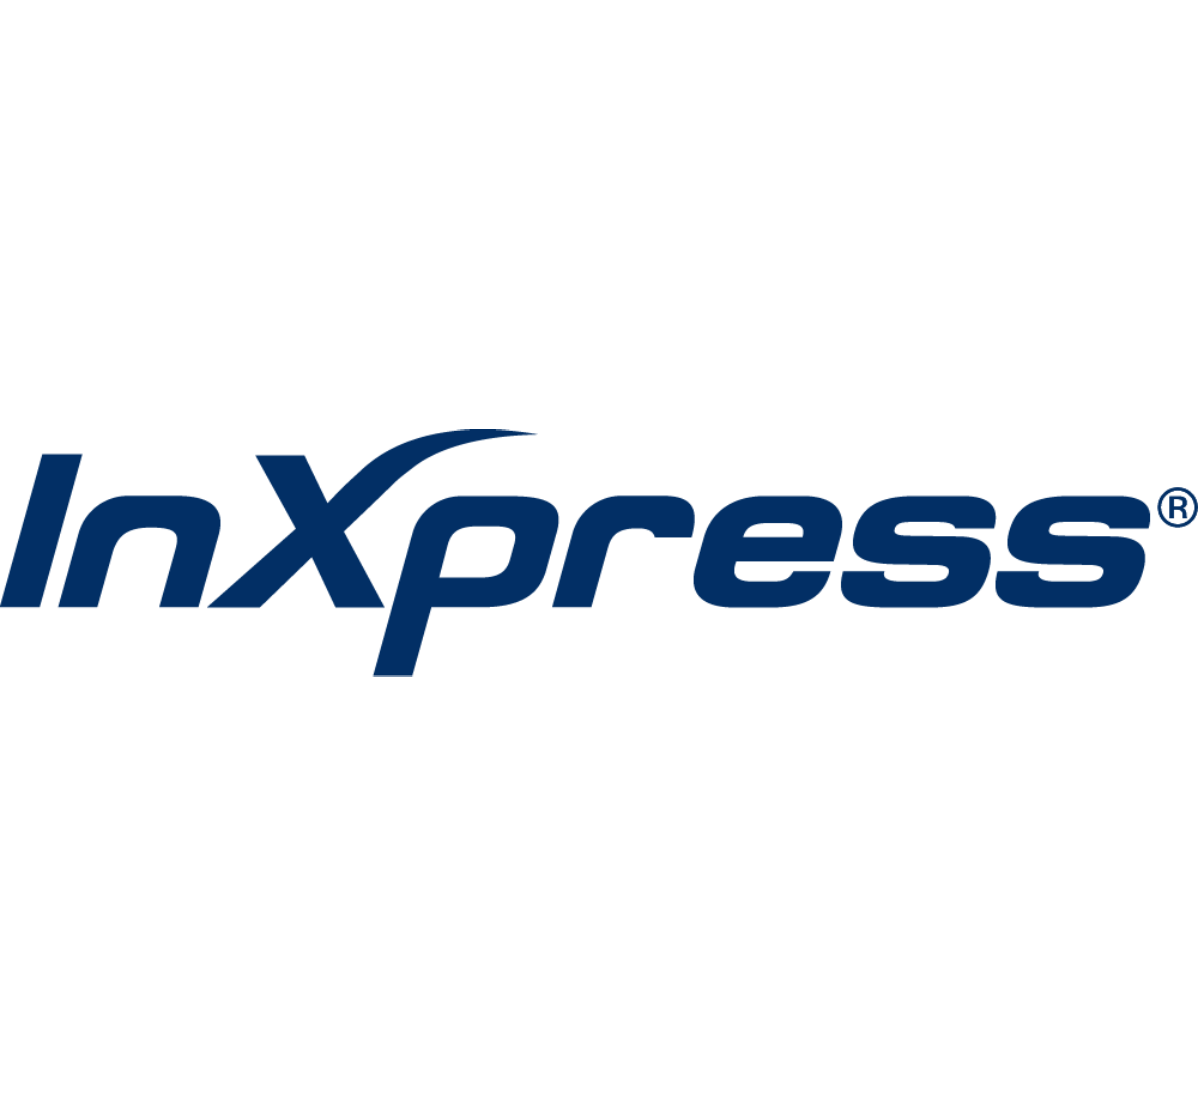 inxpress logo blue v2